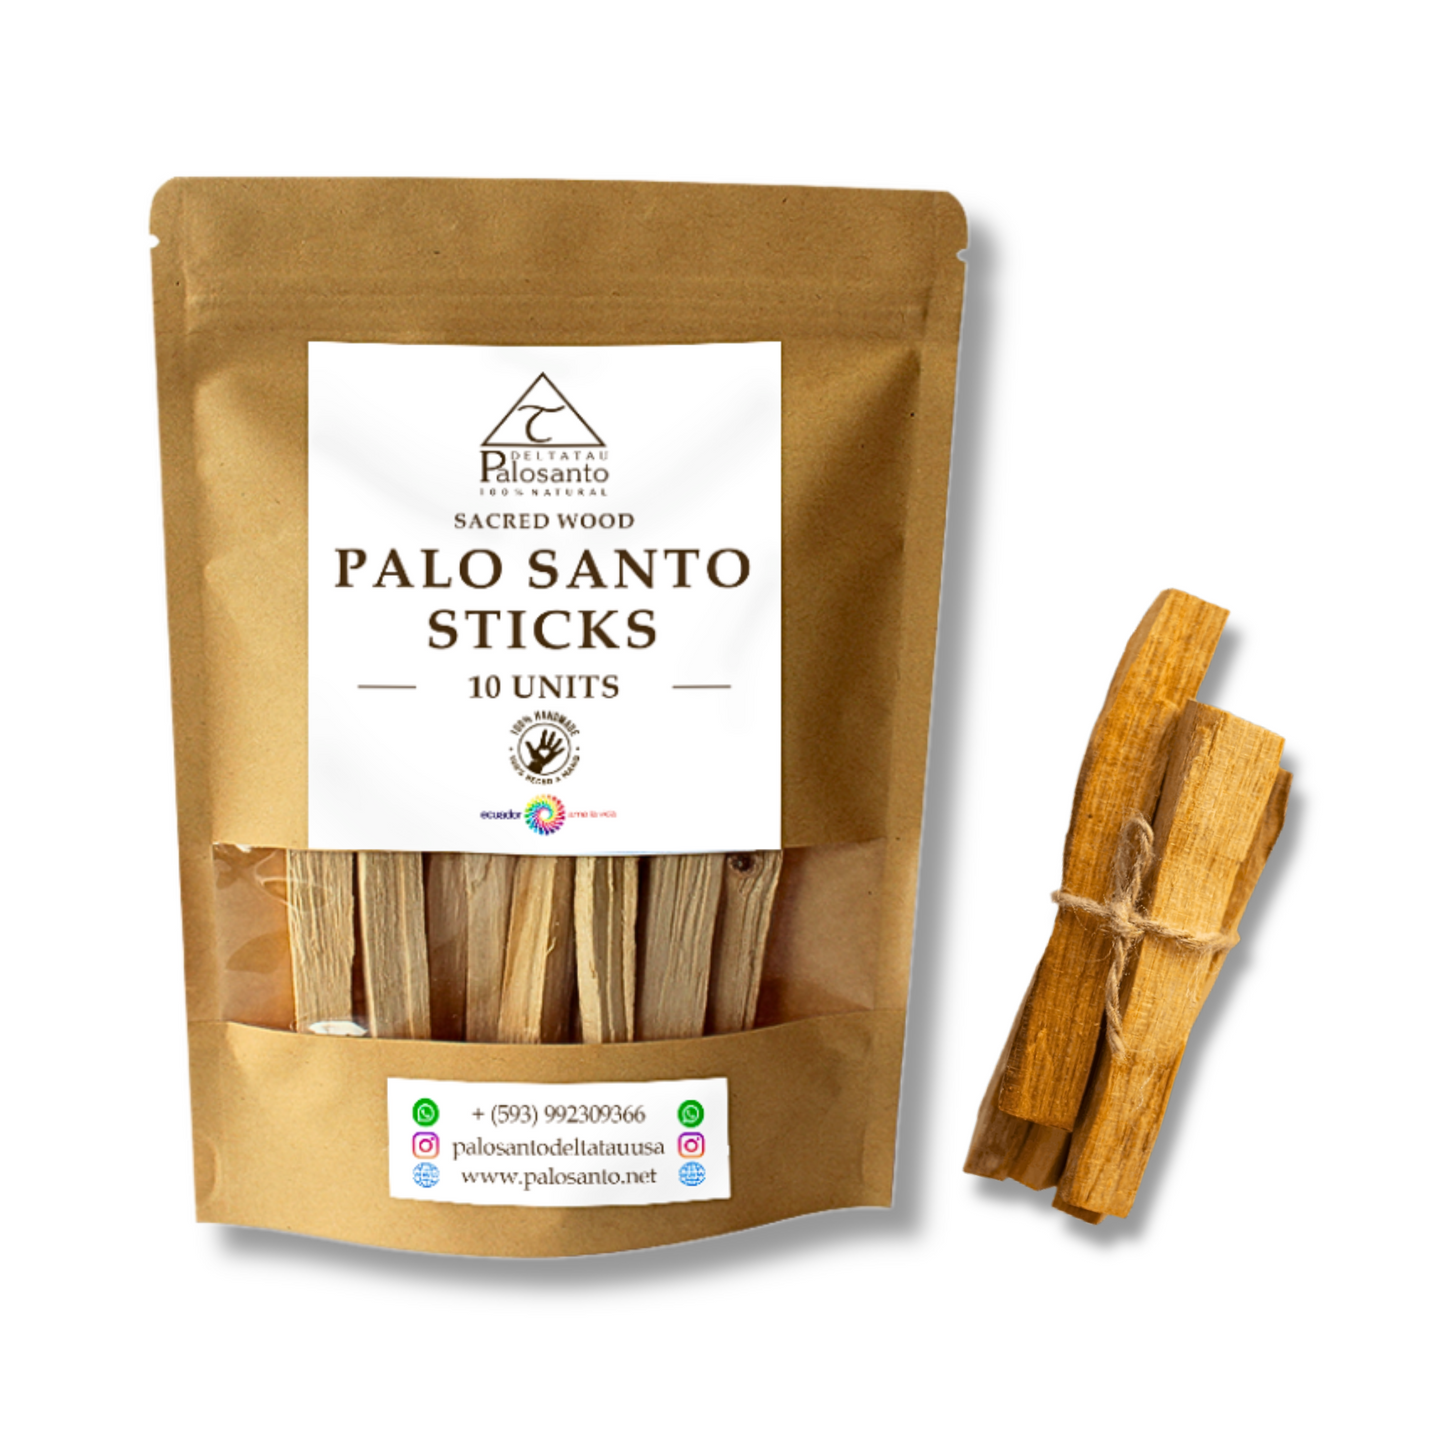 Premium Palo Santo Sticks from Ecuador